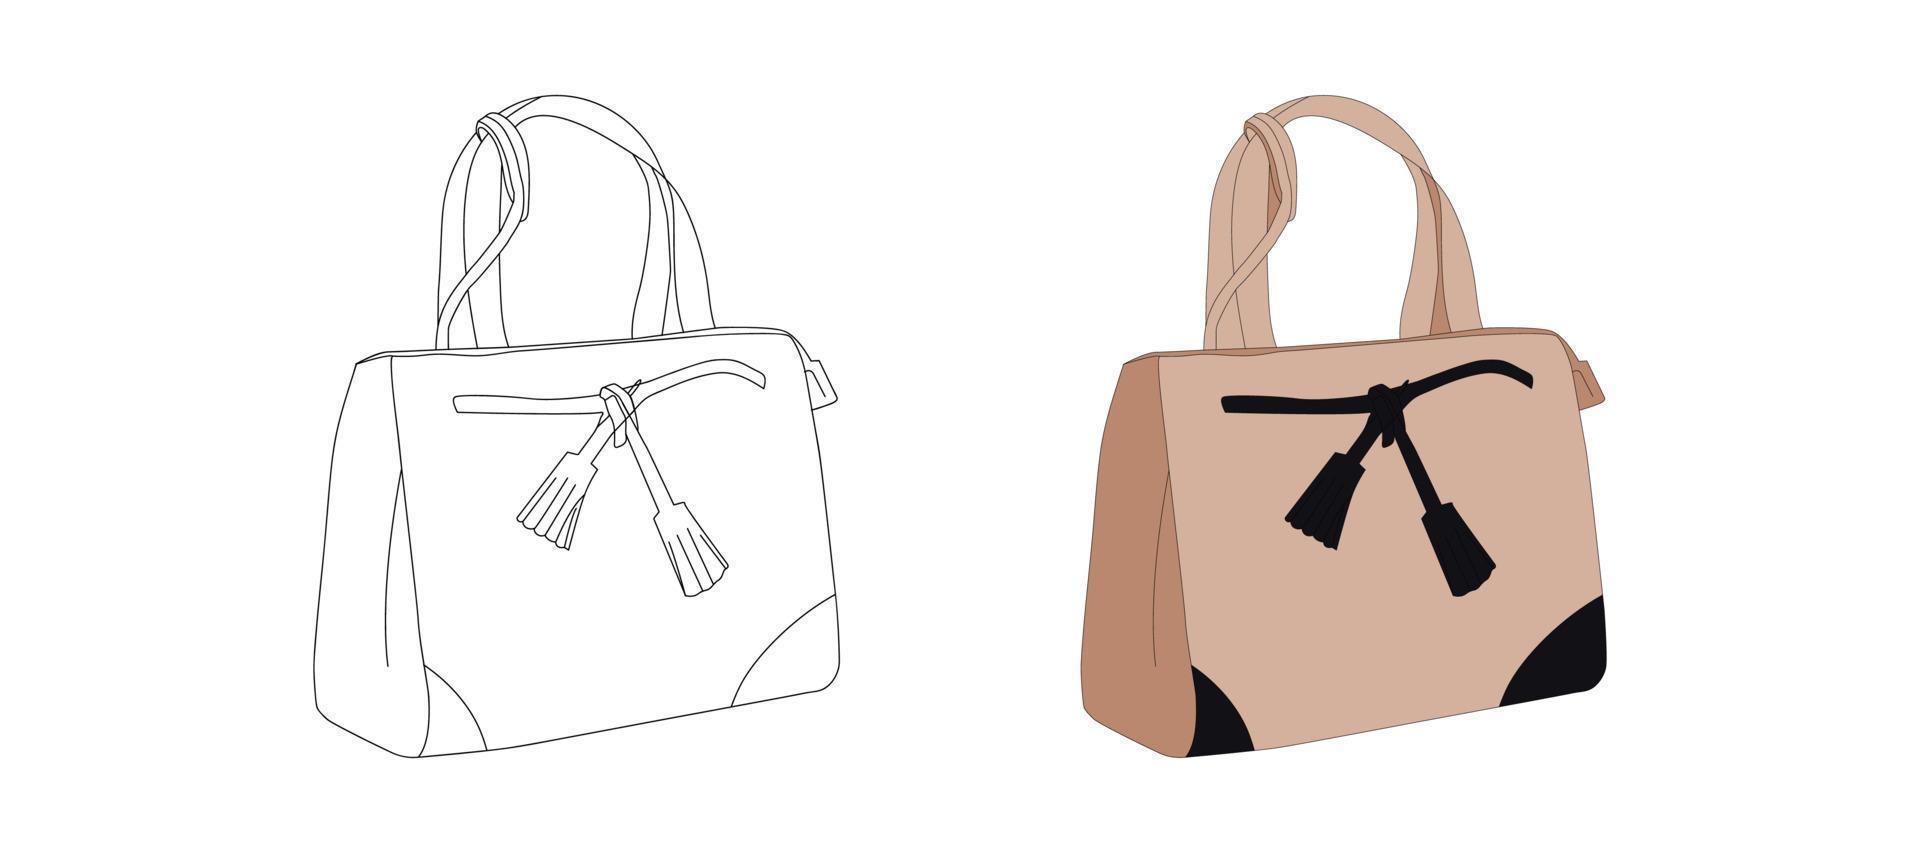 stilvolle lederhandtaschen für damen, damengeldbeutel, reißverschlusstaschen mit vektorillustration vektor